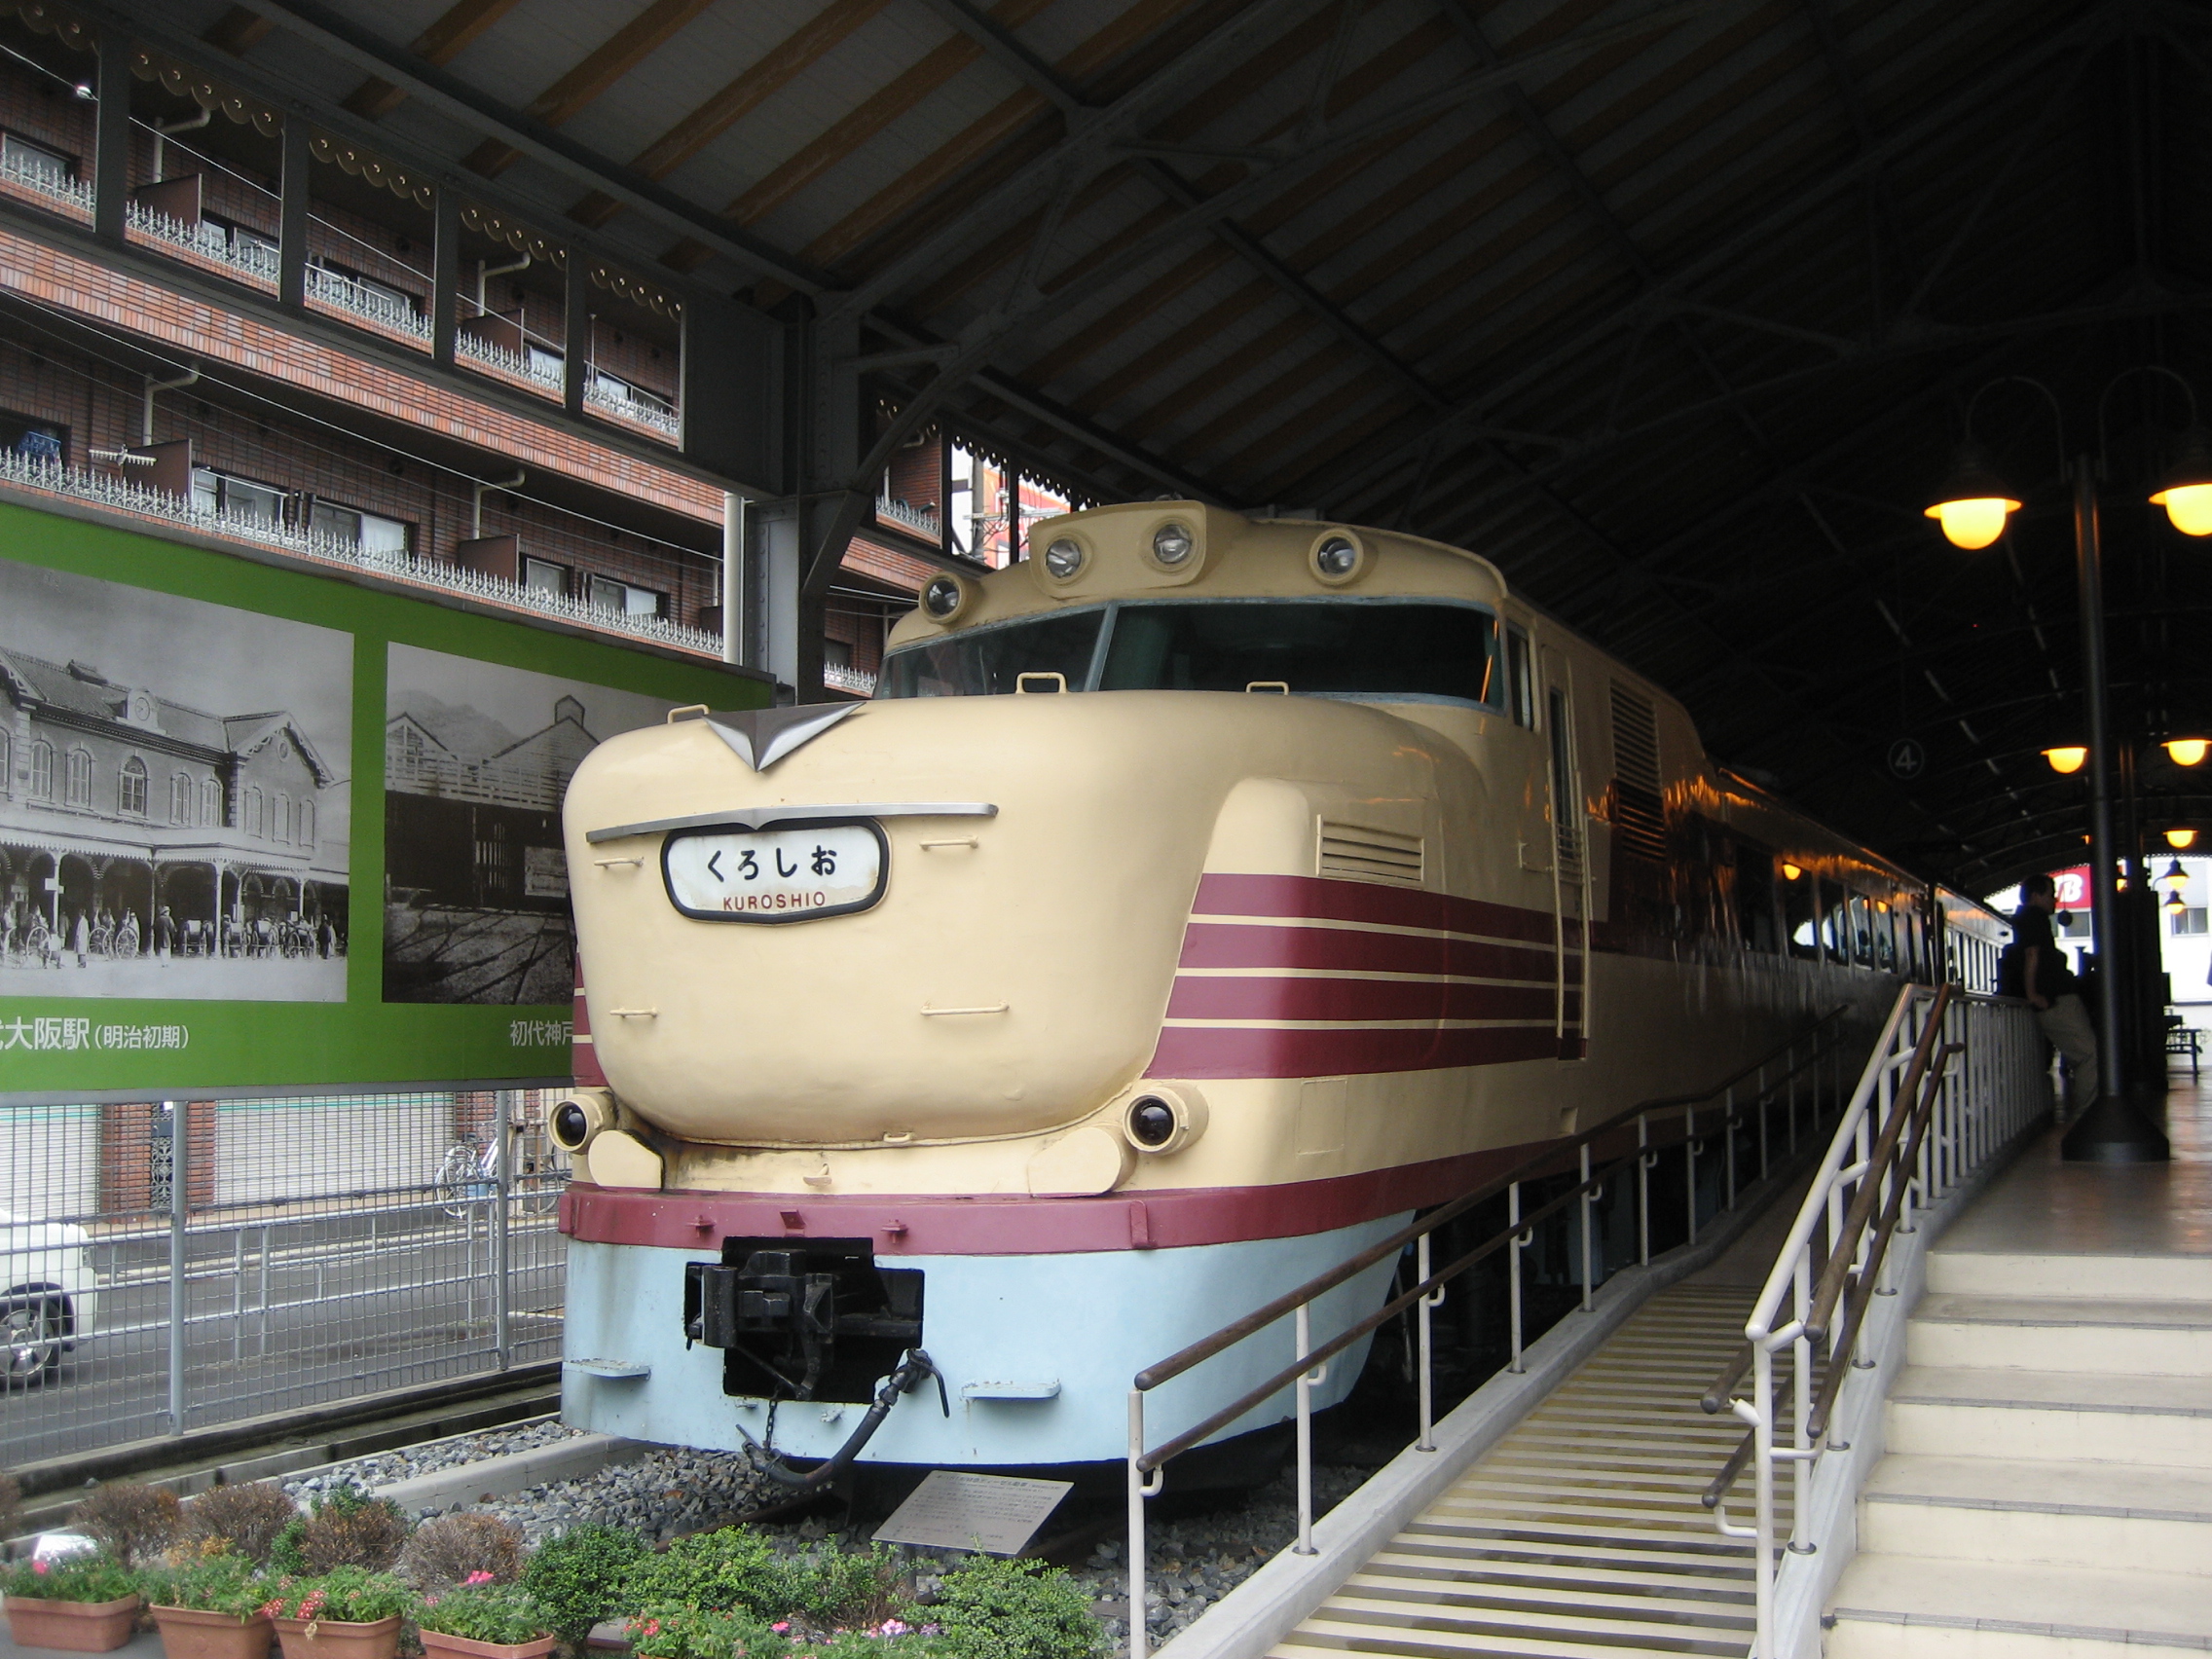 交通博物館と鉄道模型 大阪城 京橋 大阪 の旅行記 ブログ By Tomofukiさん フォートラベル